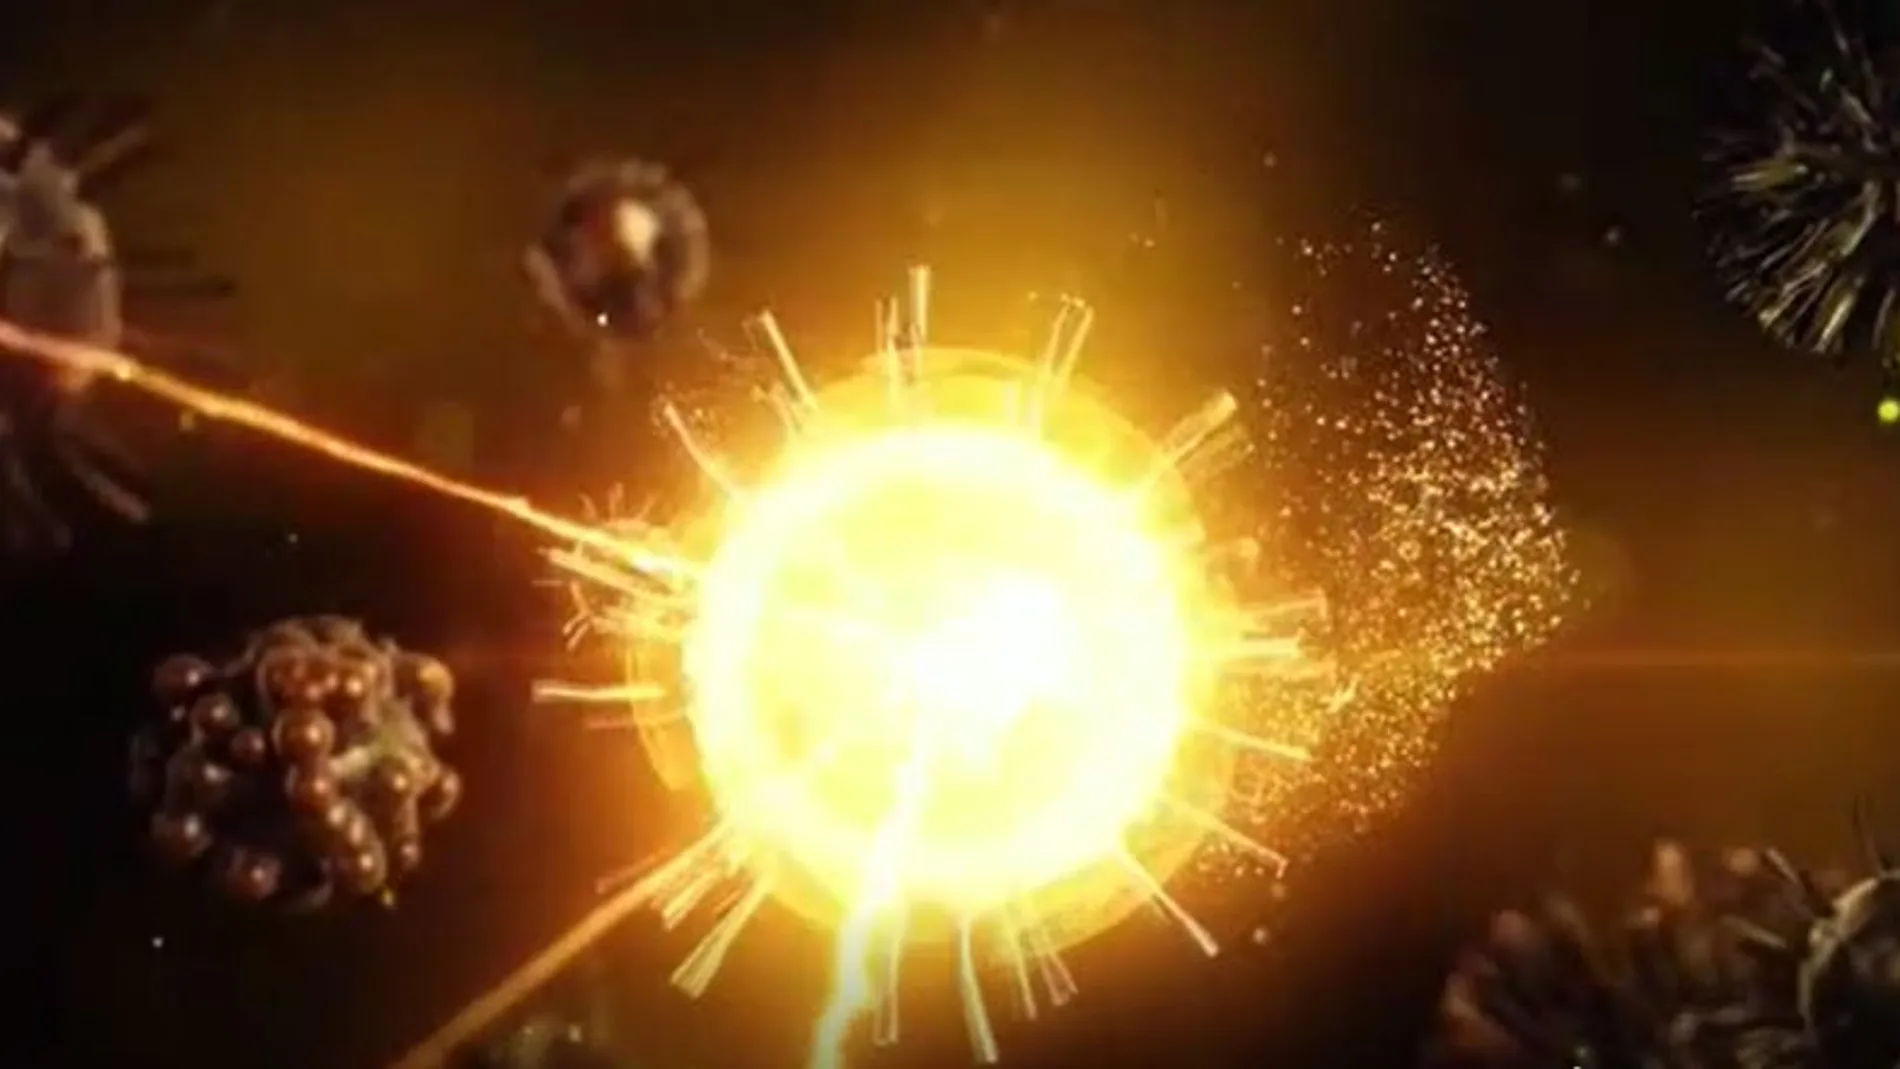 Captura de un vídeo de Isis en el que se representa un virus haciendo explosión, en refrencia a atentados en este momento